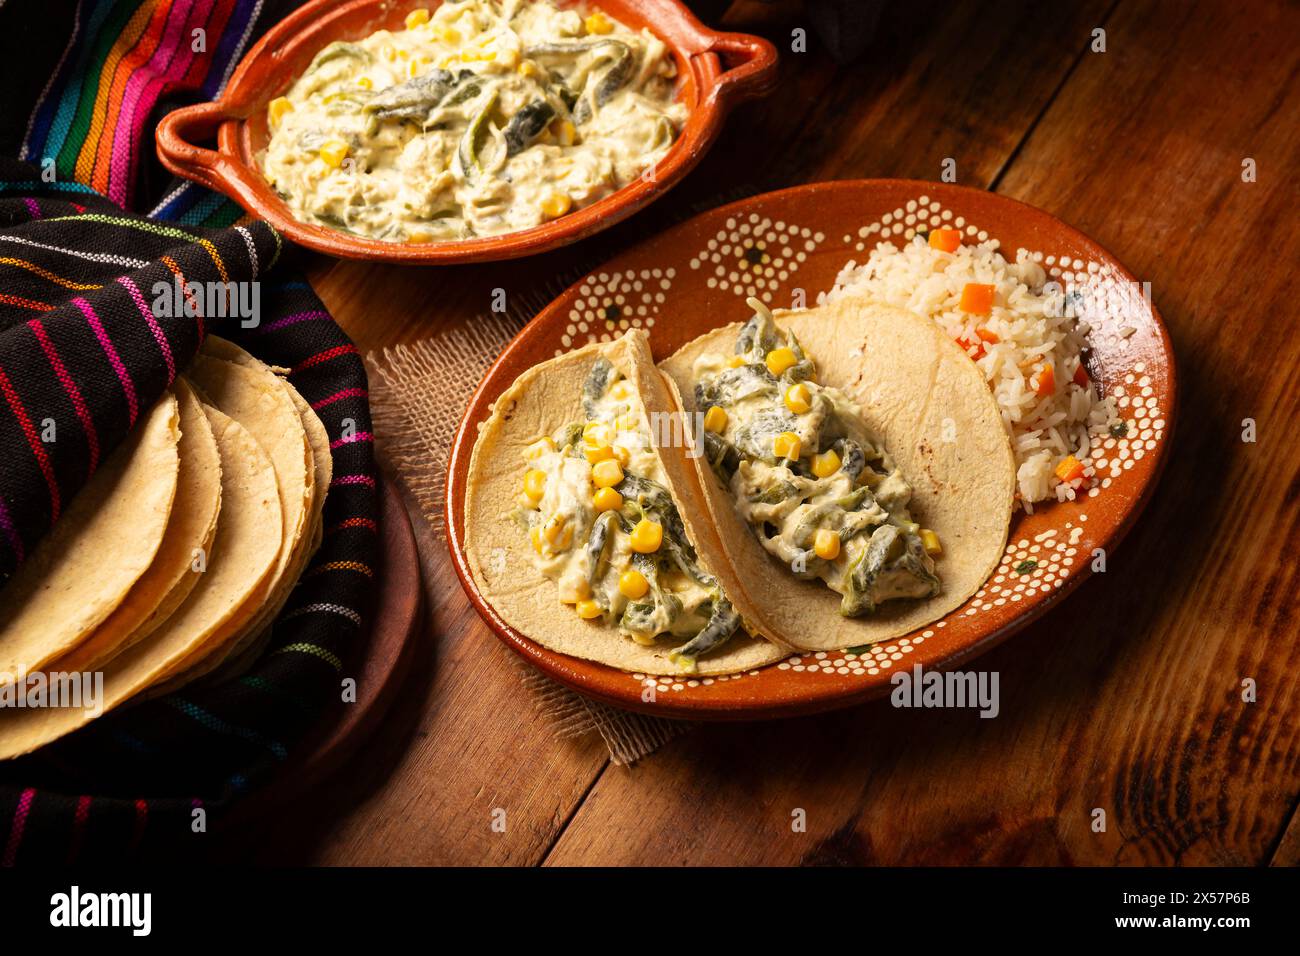 Rajas avec crème. Plat très populaire au Mexique qui se compose de lanières de piment poblano avec de la crème, il est servi en garniture ou en tacos, c'est un typi Banque D'Images